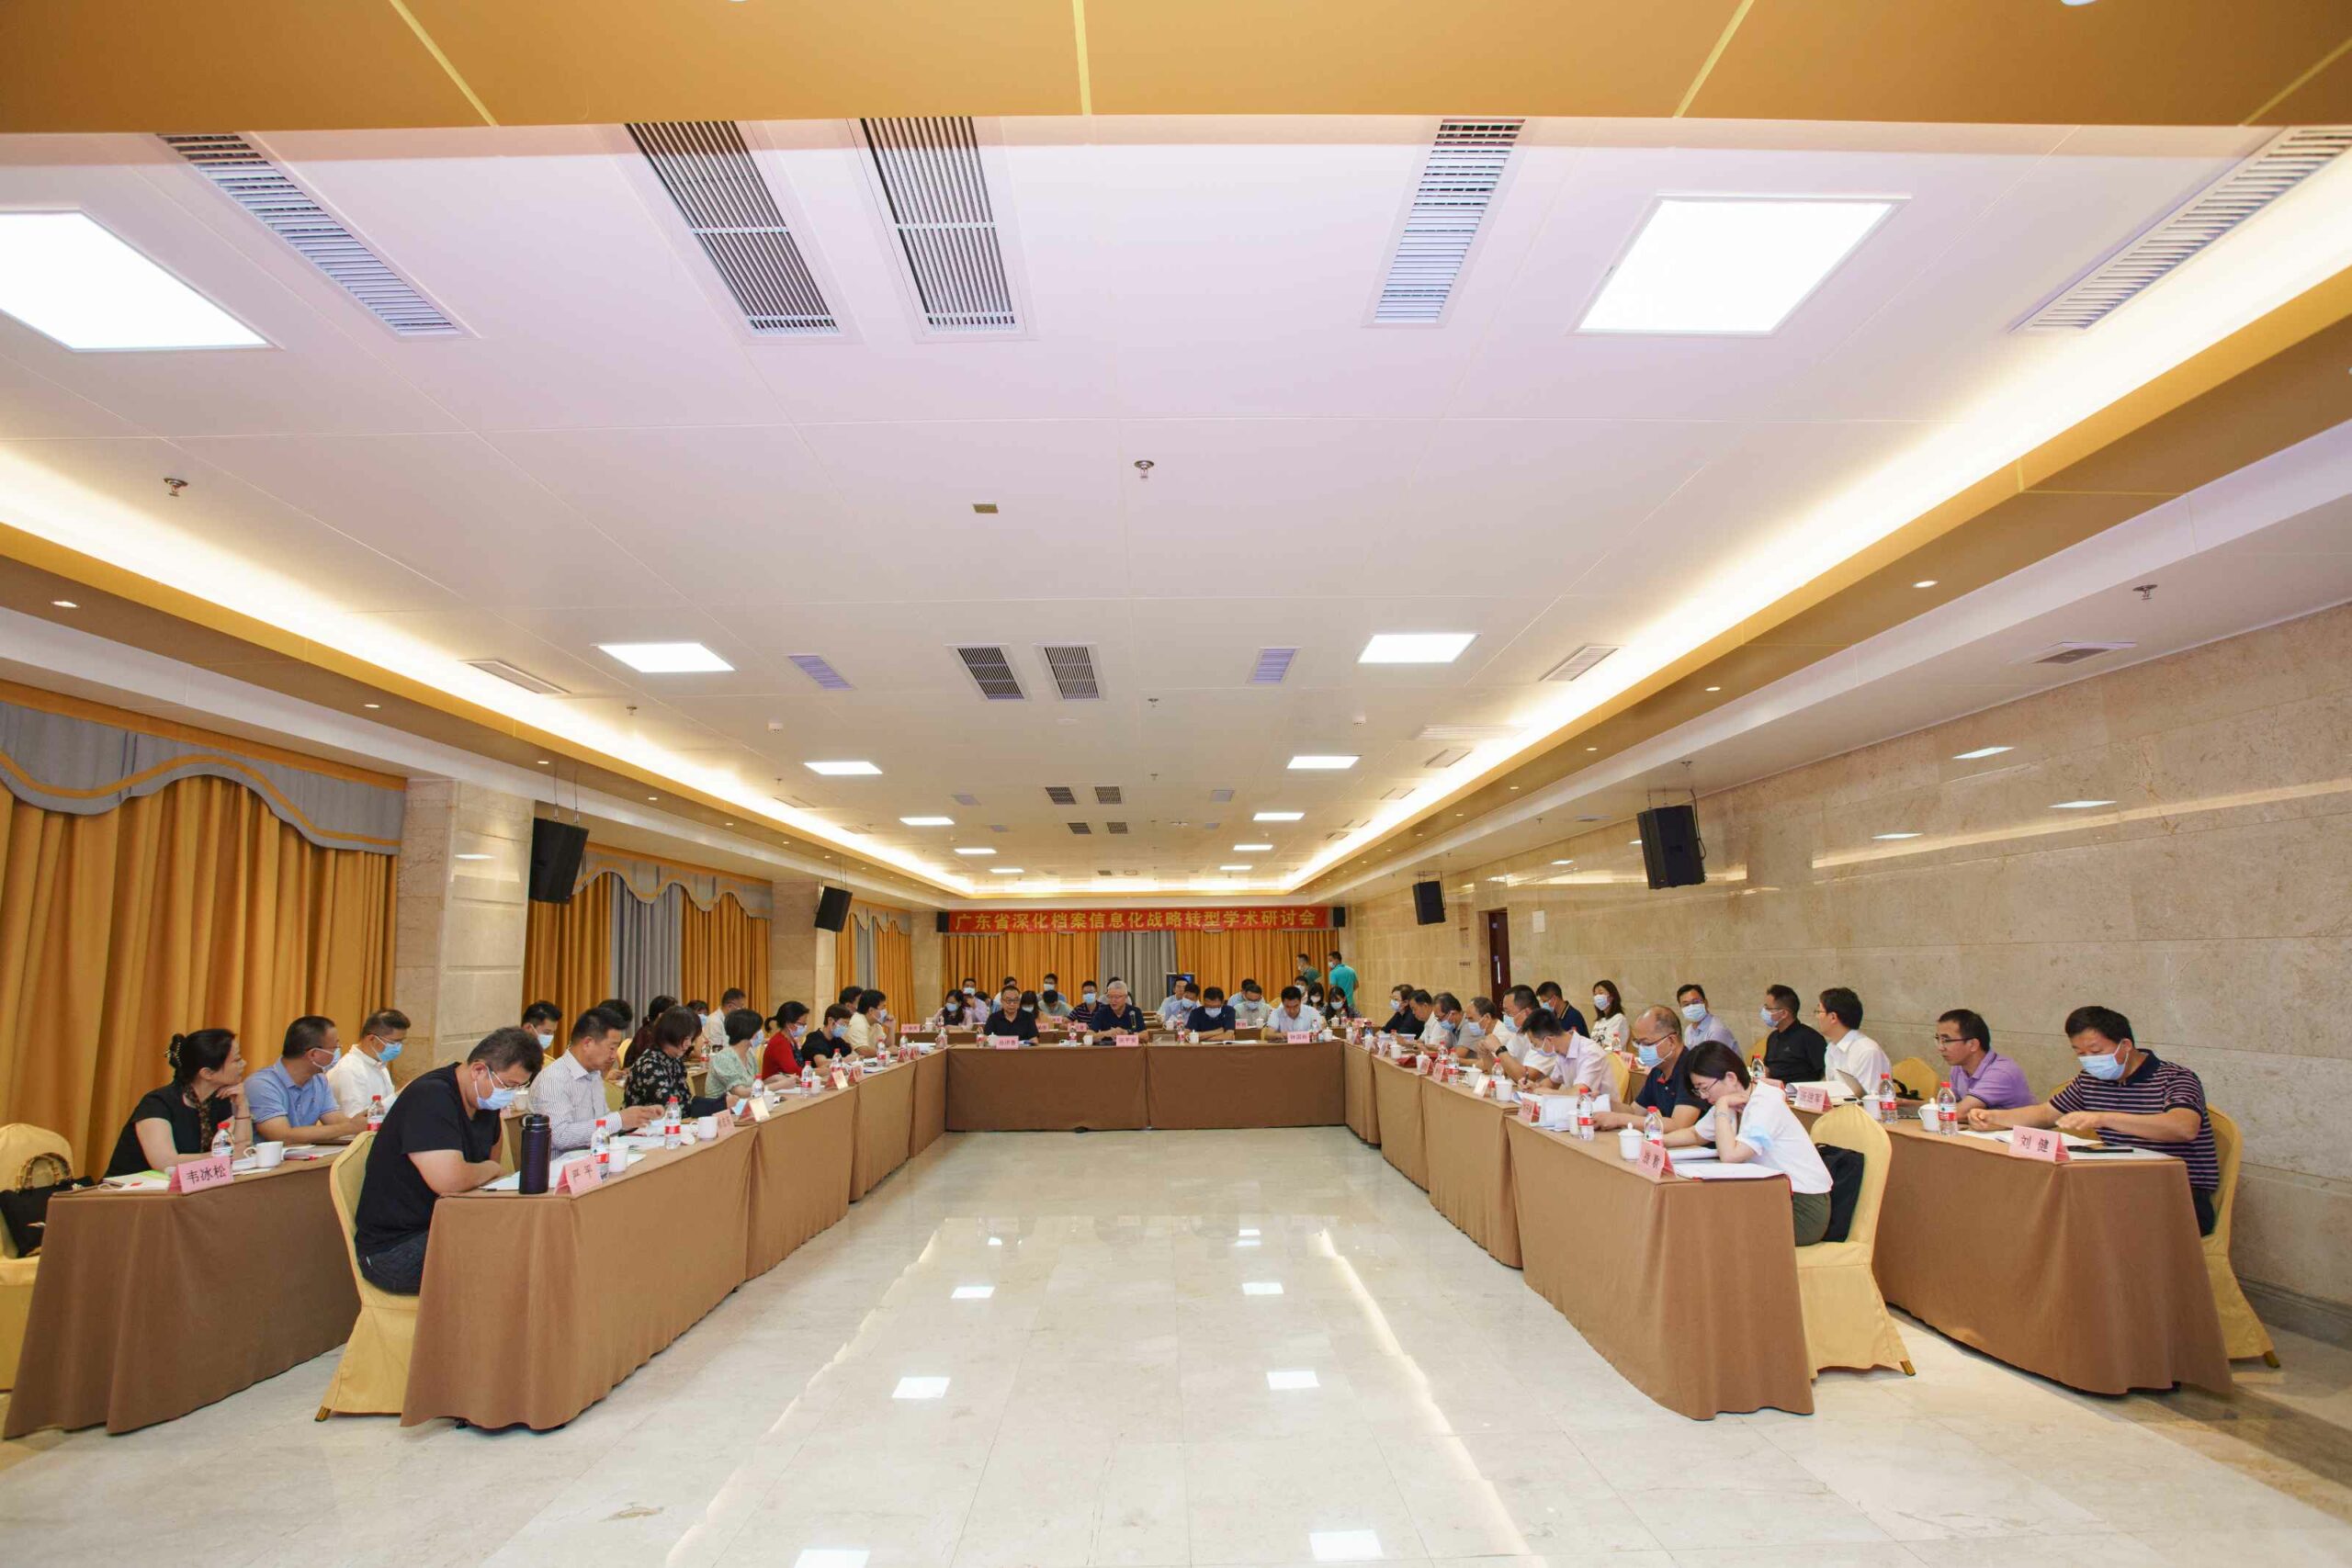 友虹科技受邀出席广东省深化档案信息化战略转型学术研讨会并做主题演讲